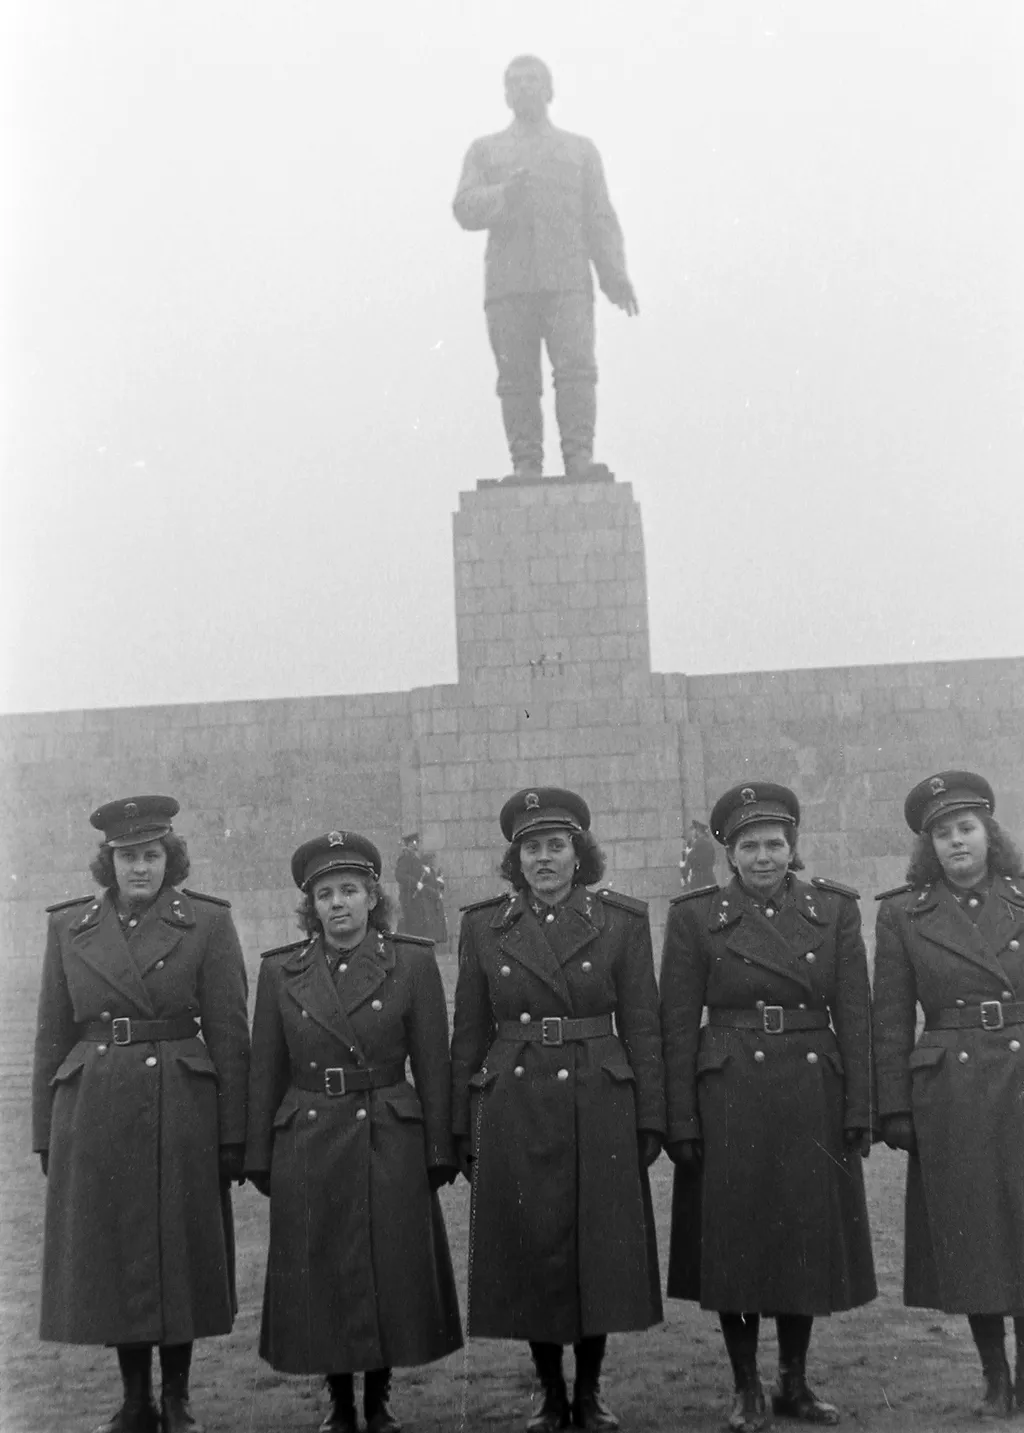 a mai Ötvenhatosok tere, Mikus Sándor szobrászművész alkotása, a Sztálin szobor avatása 1951. december 16-án.
ÉV 